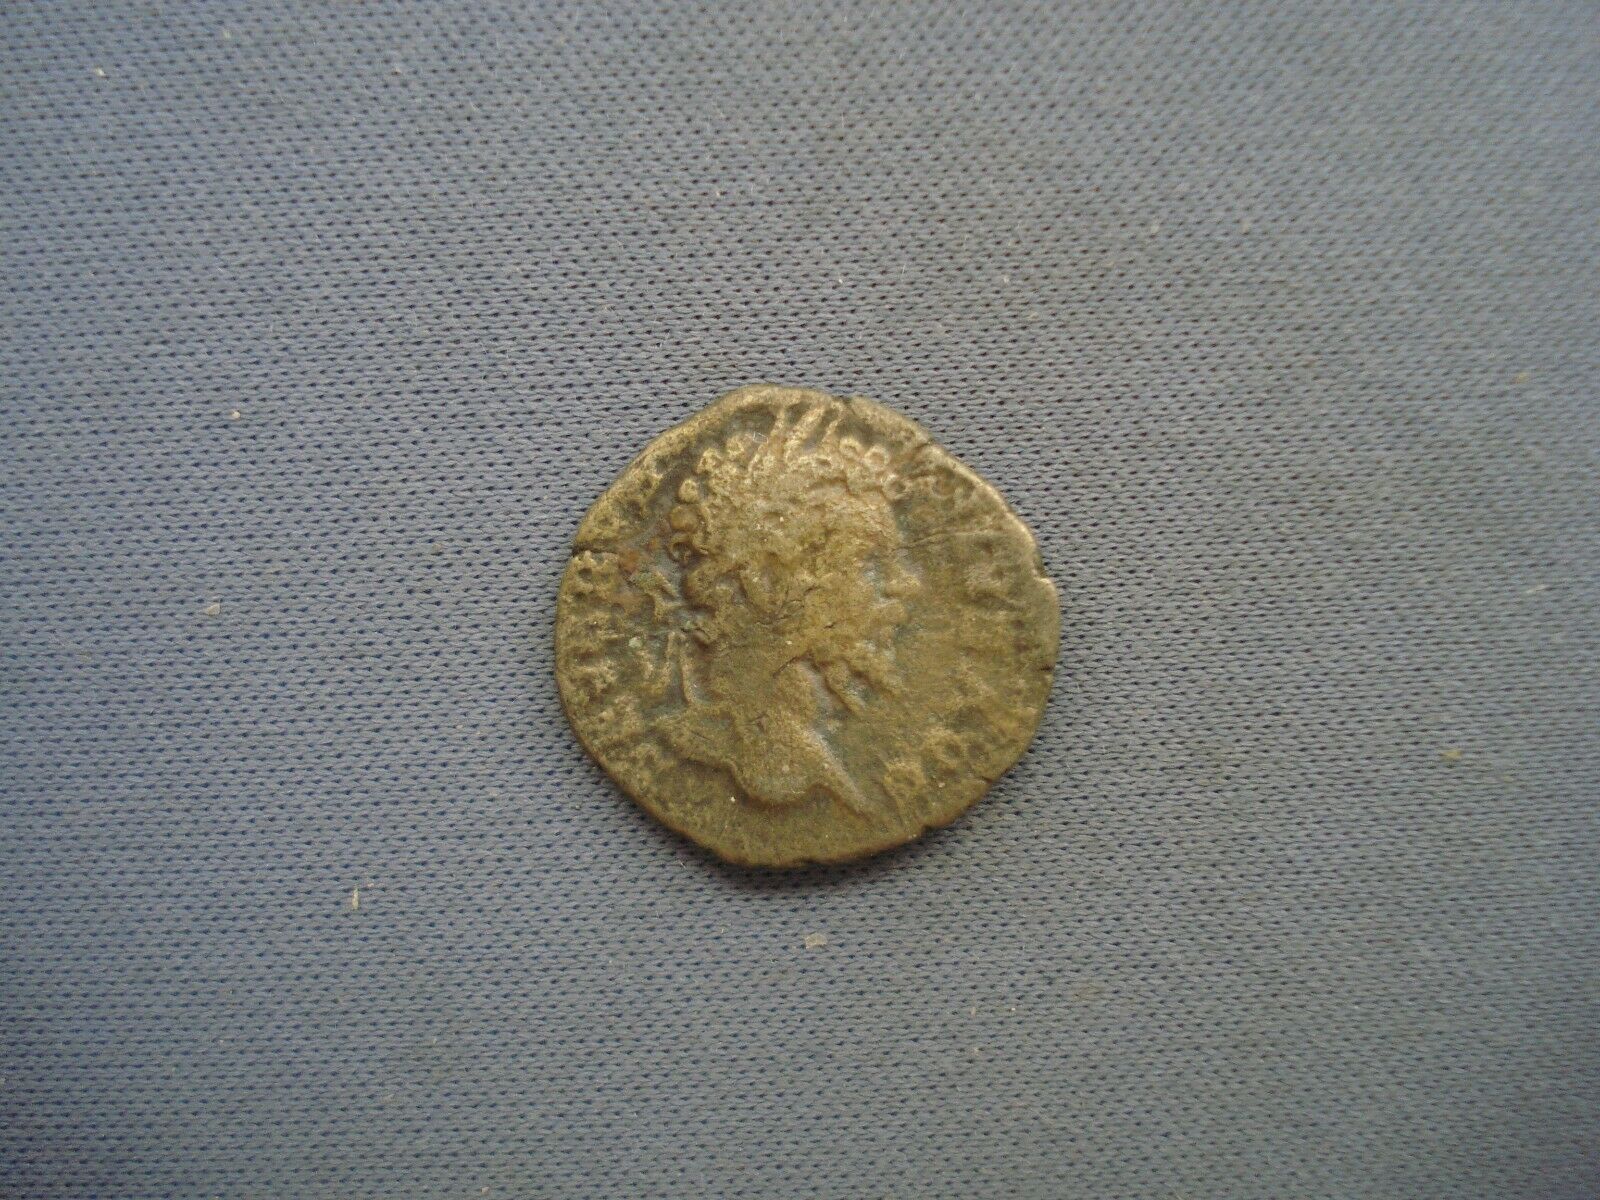 201 Ad Roman Empire - Septimius Severus - Ar Denarius - 4027